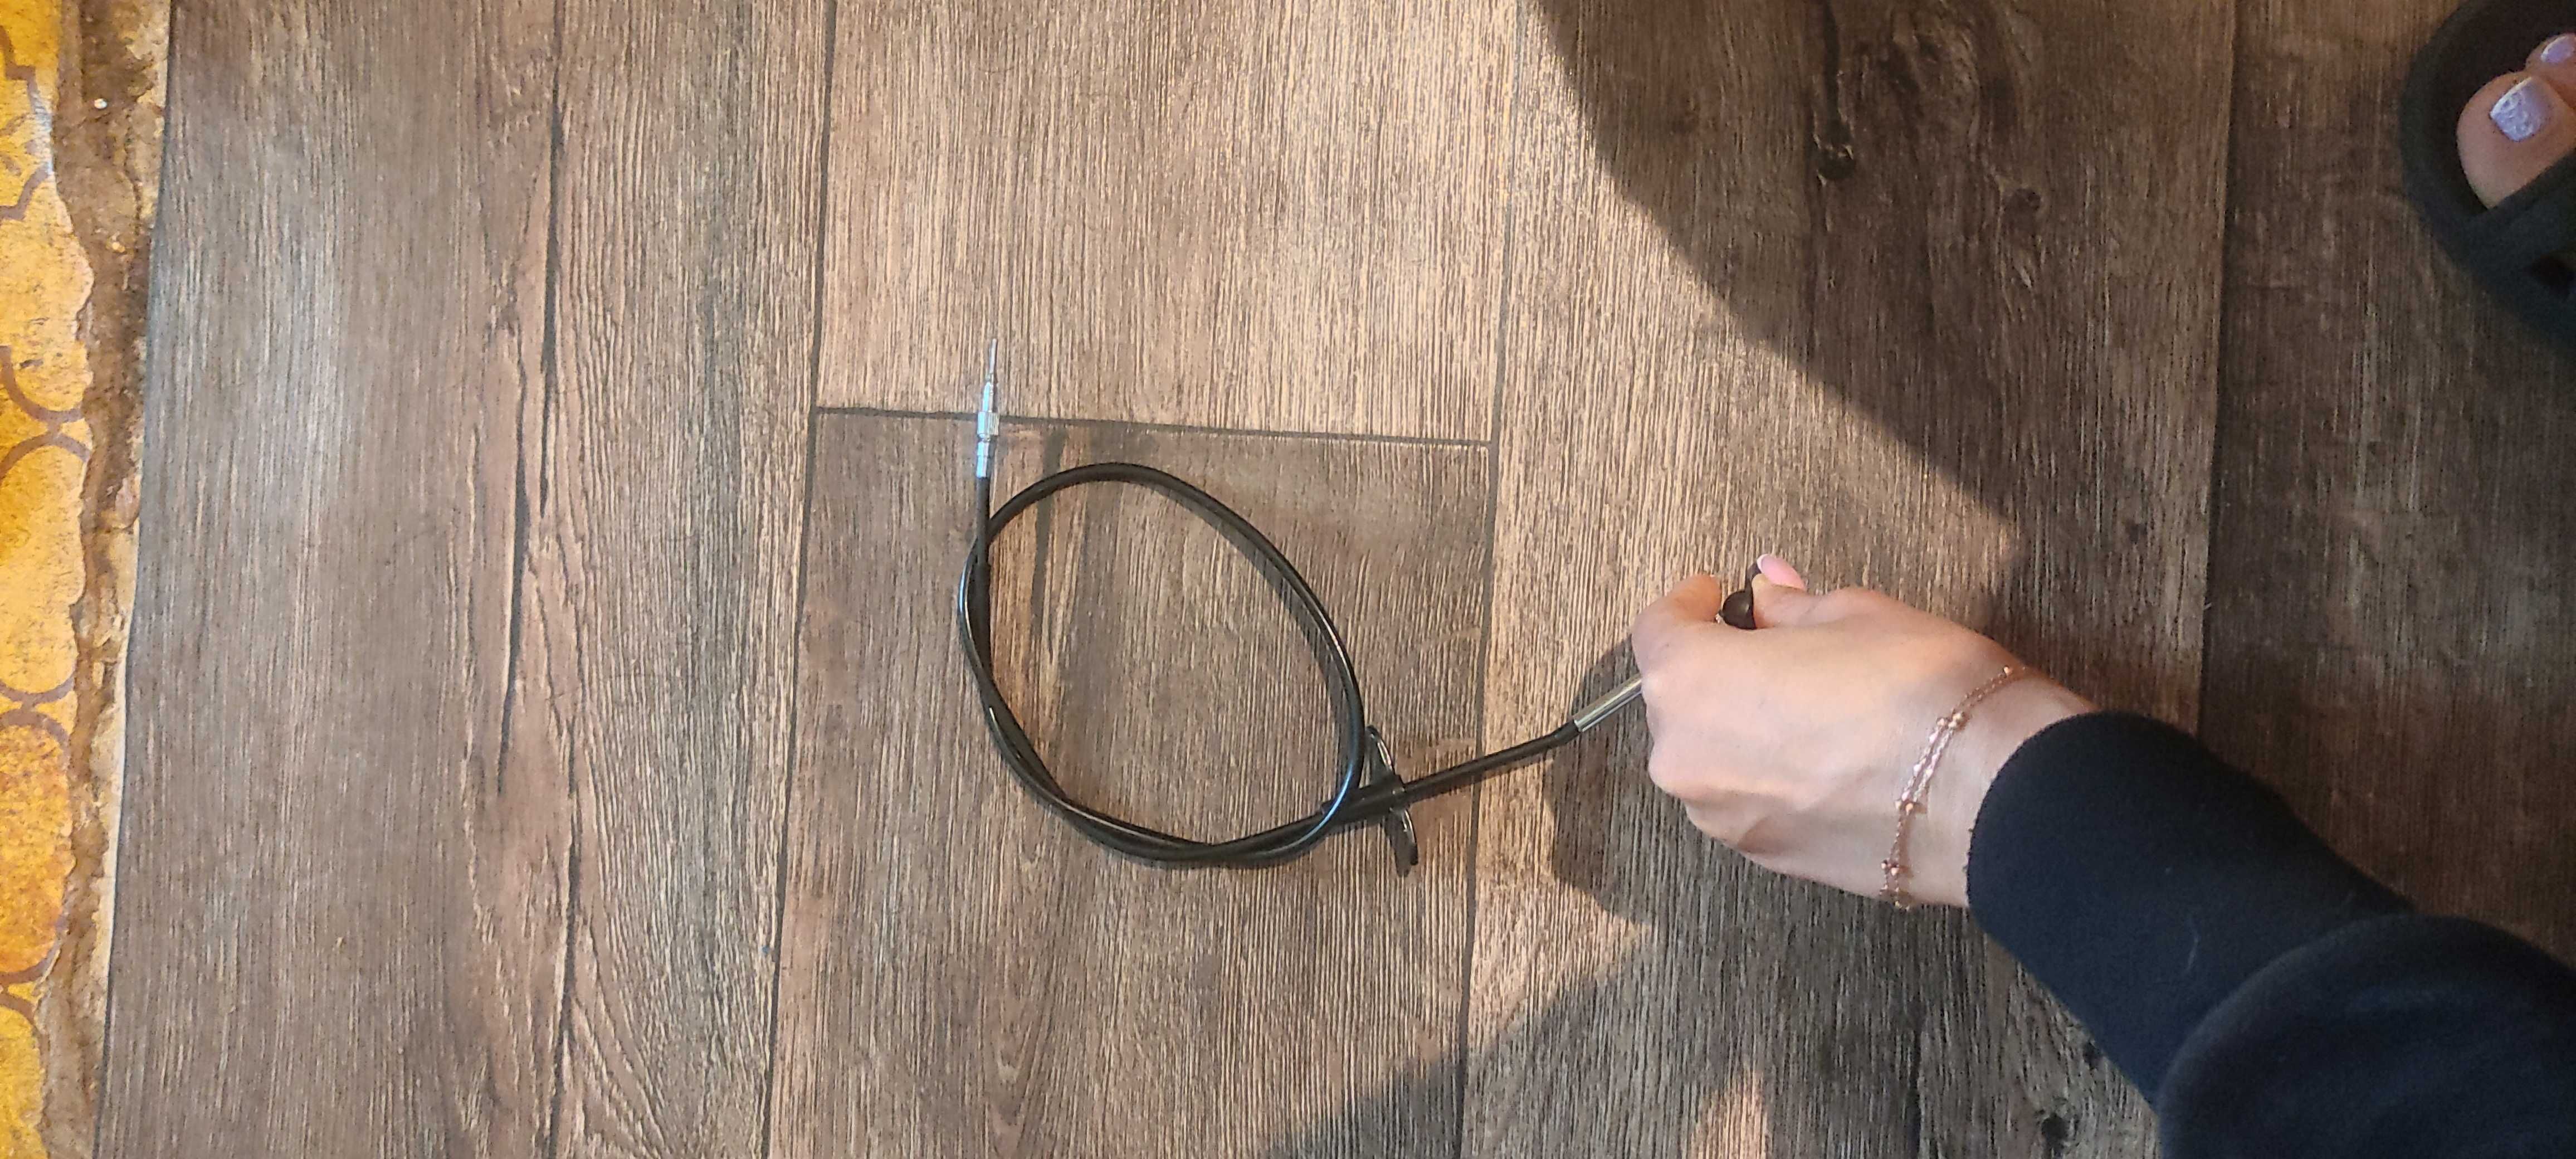 Дистанционный кабель аксессуар для камеры штатив монопод тросик затвор